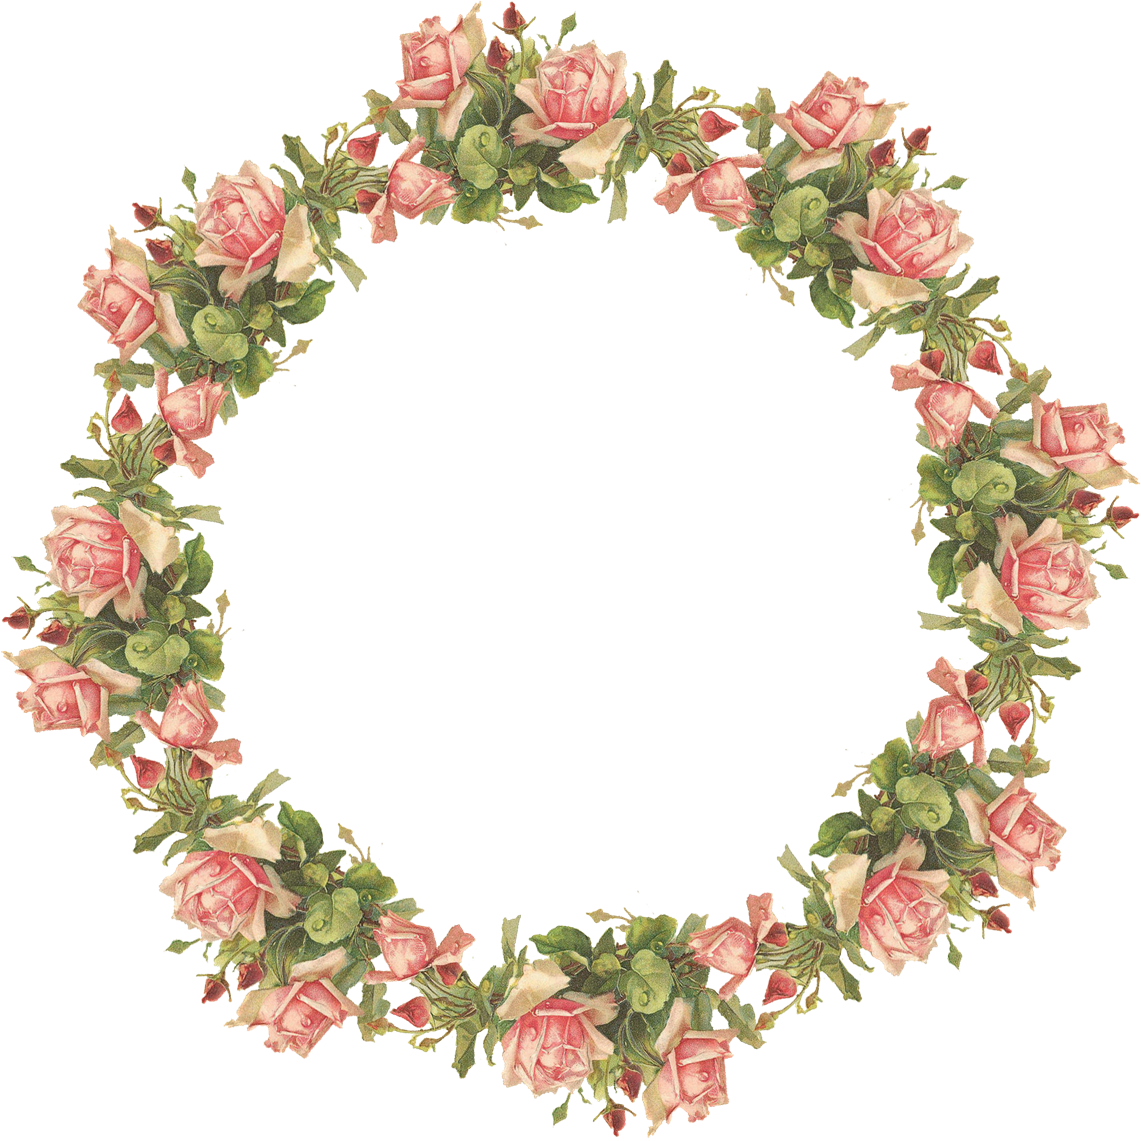 Pink Circle Flower Frame HQ Image Free PNG Image